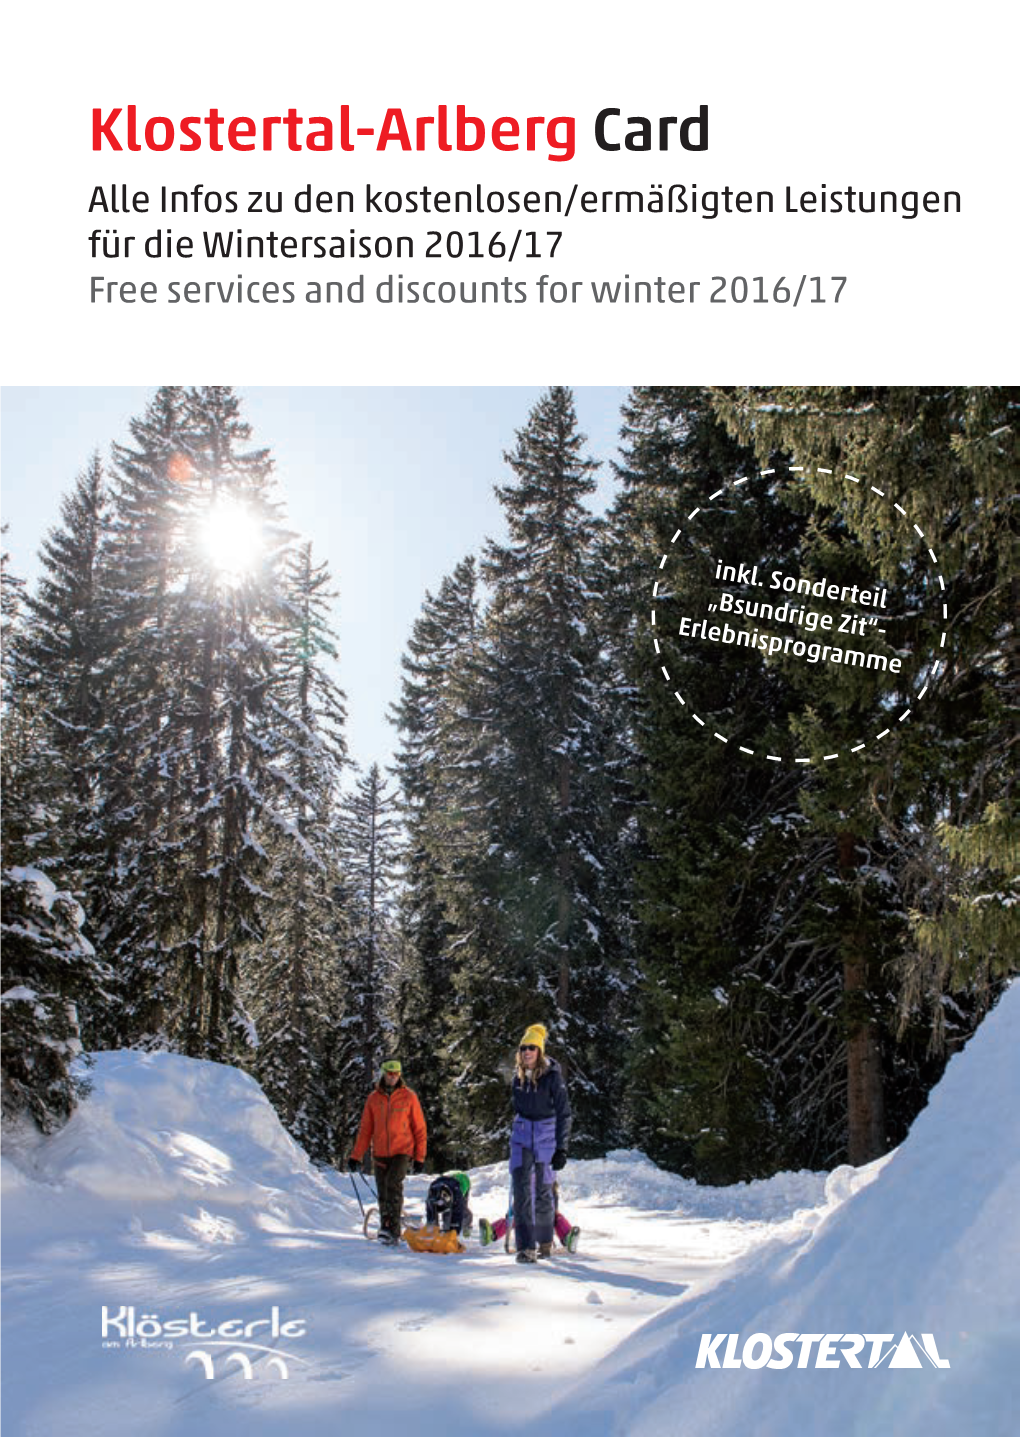 Information Zur Klostertal-Arlberg Card